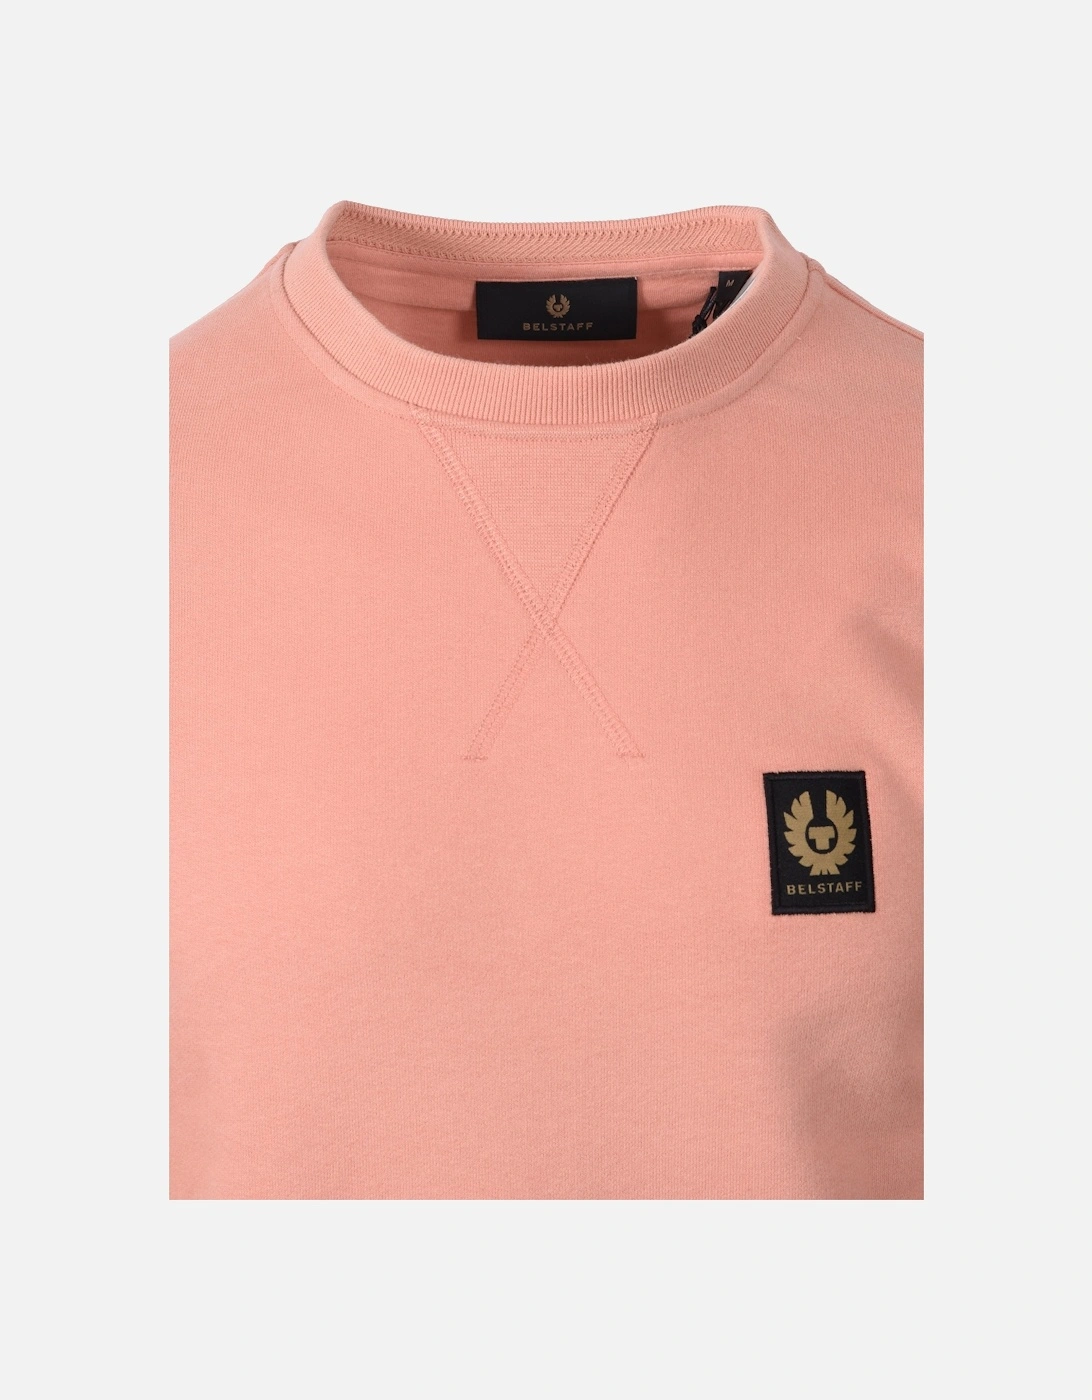 Sweatshirt Rust Pink